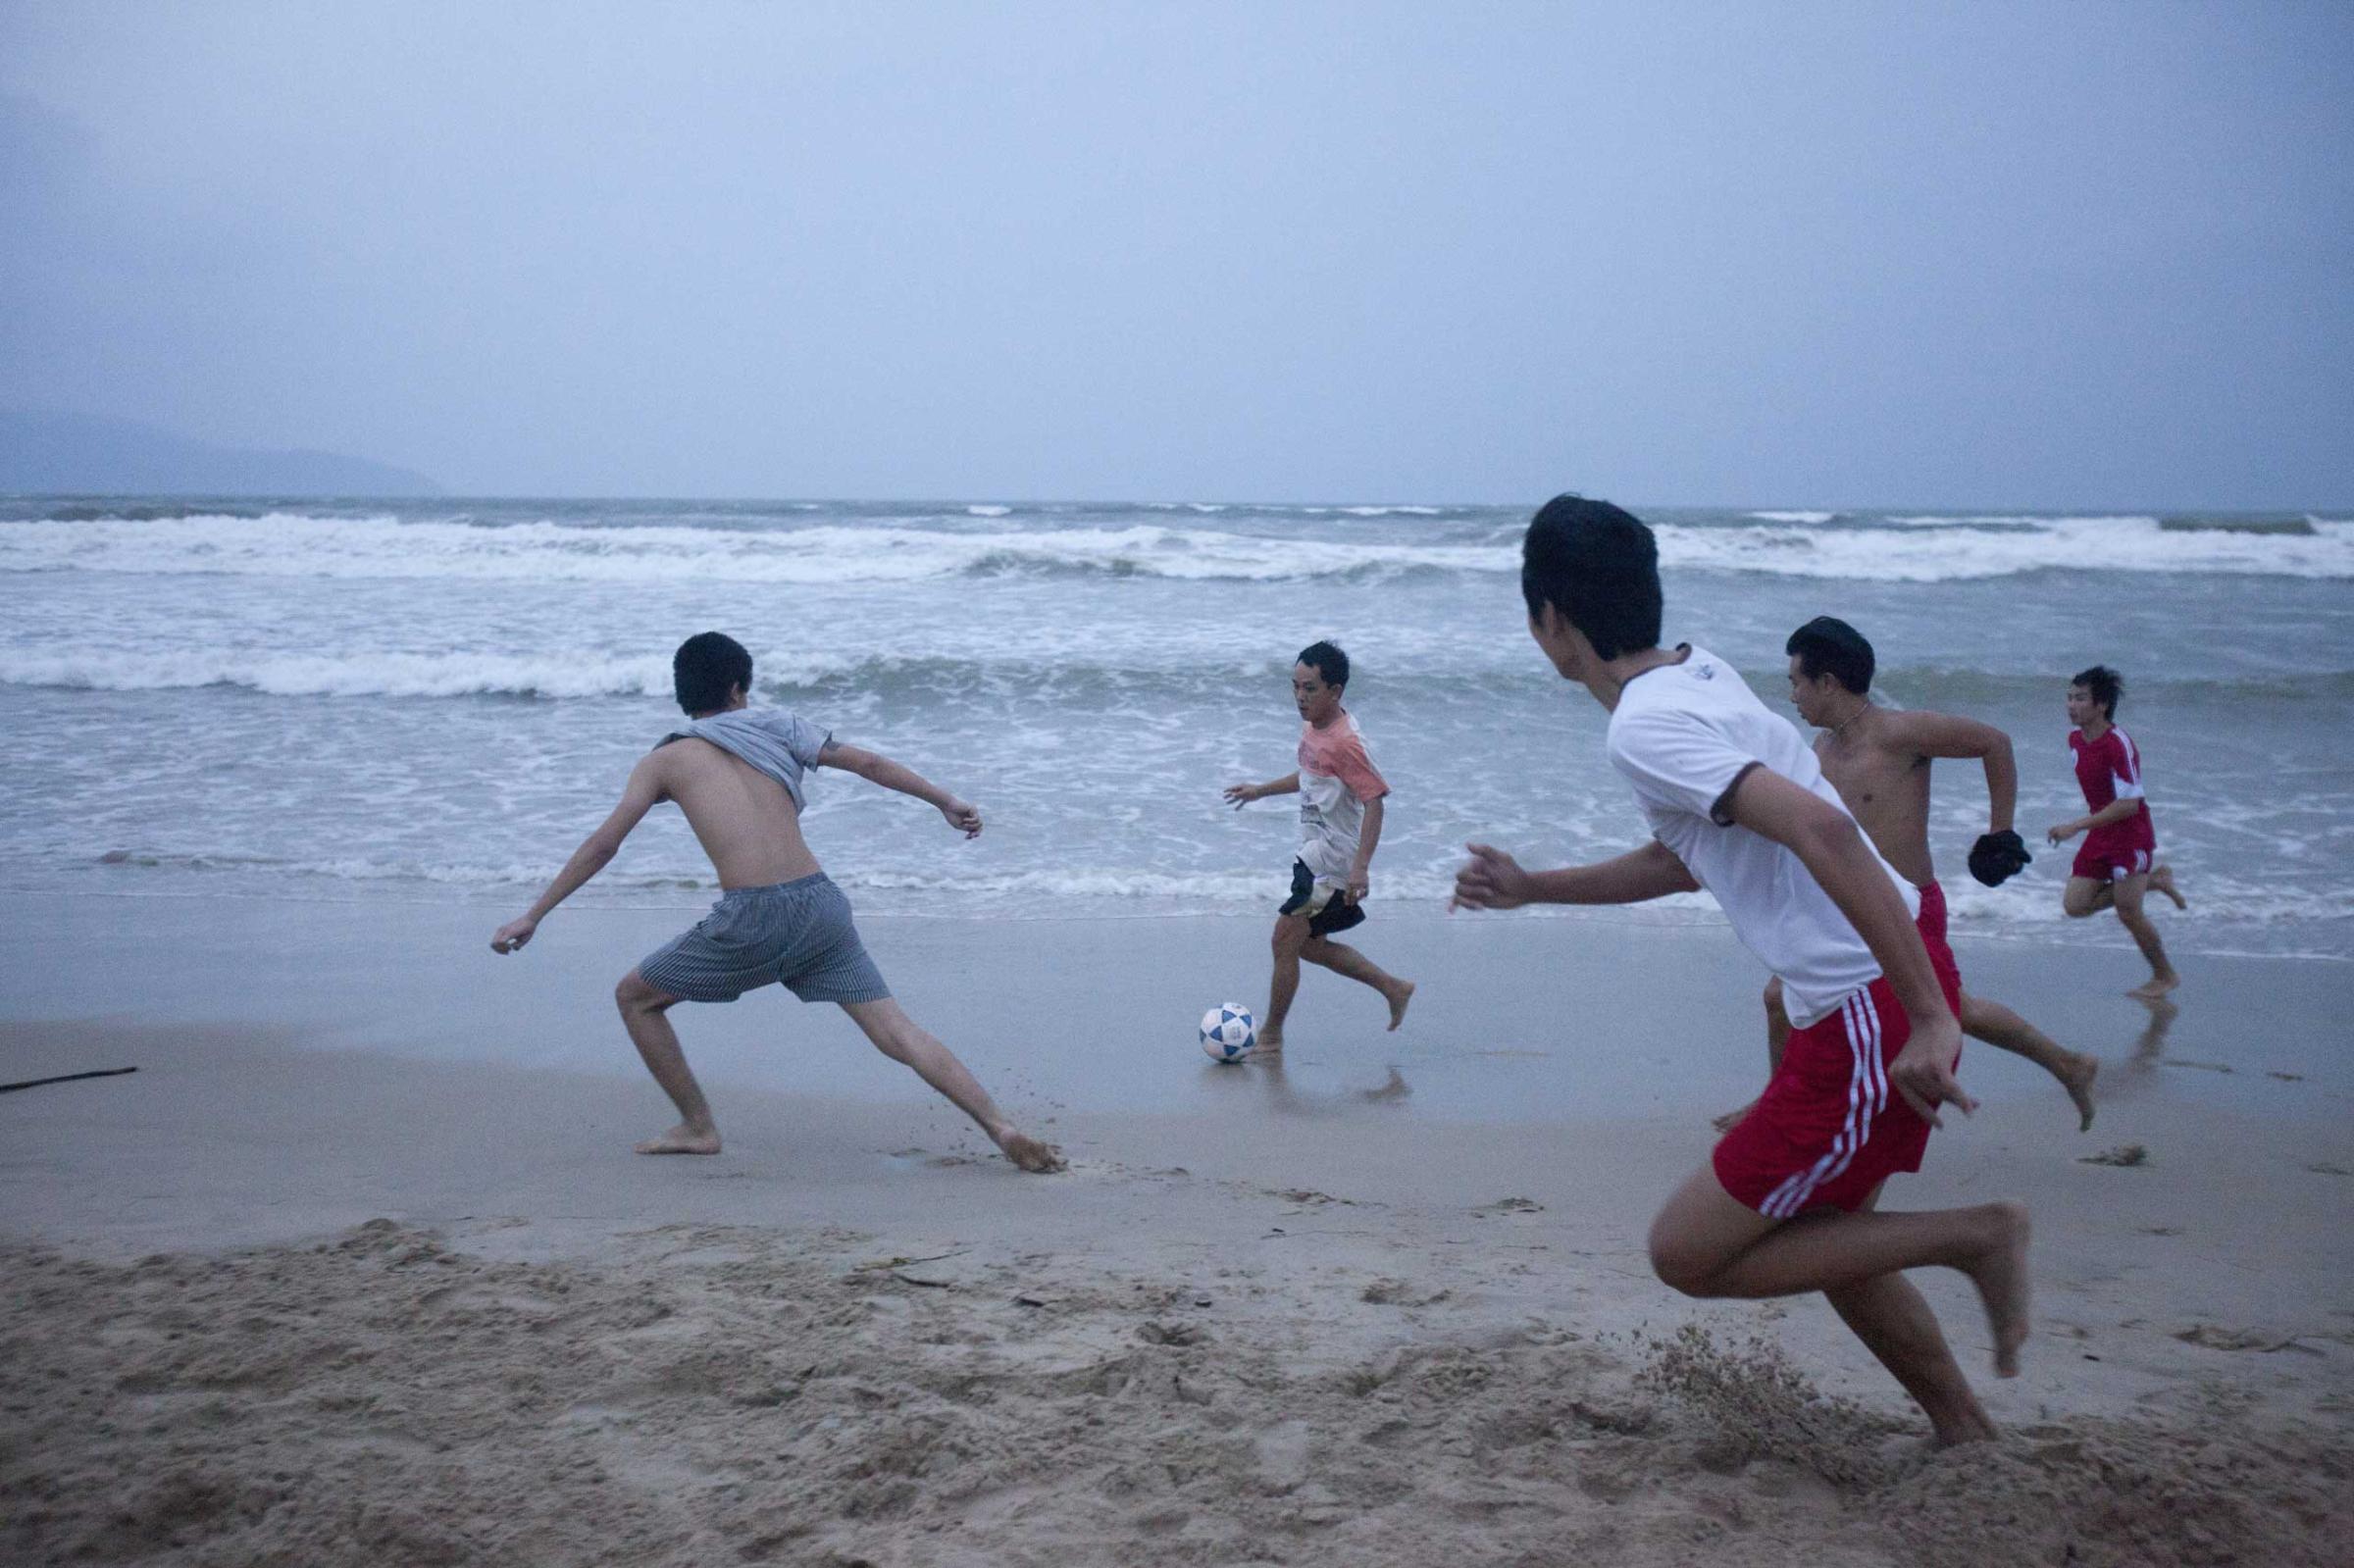 Students play football on the beach